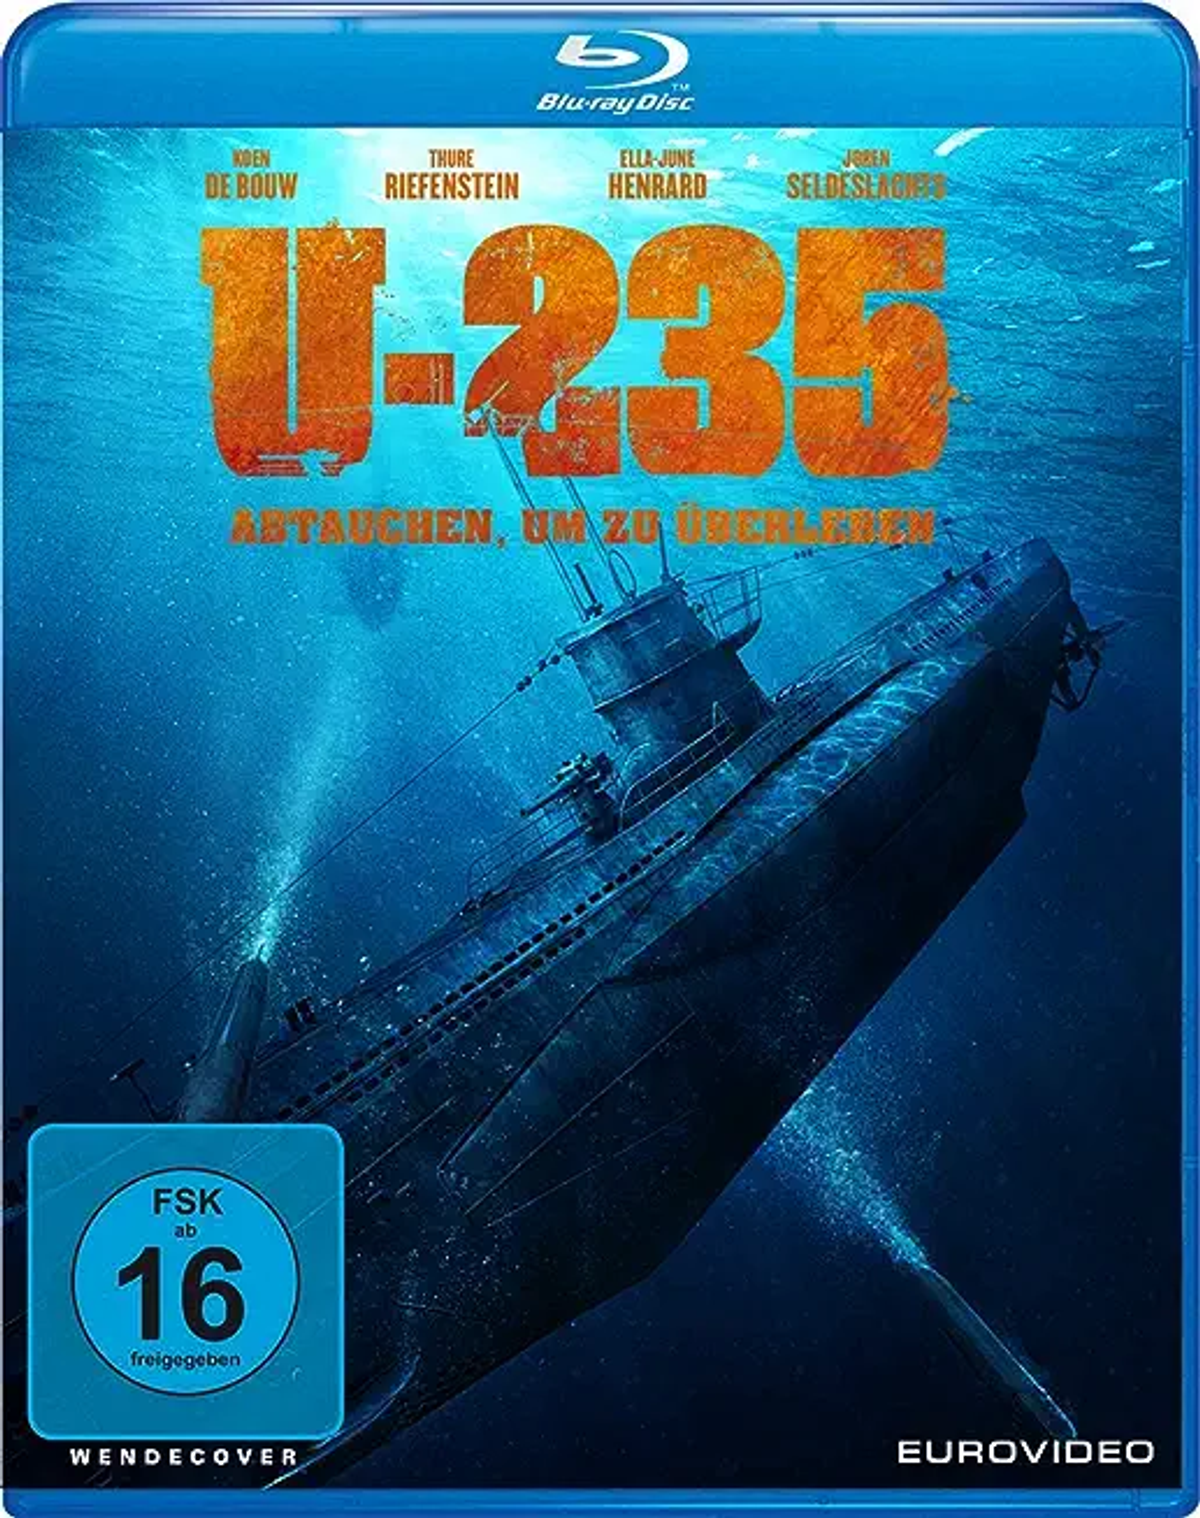 U-235 - Blu-ray zu um Abtauchen, überleben